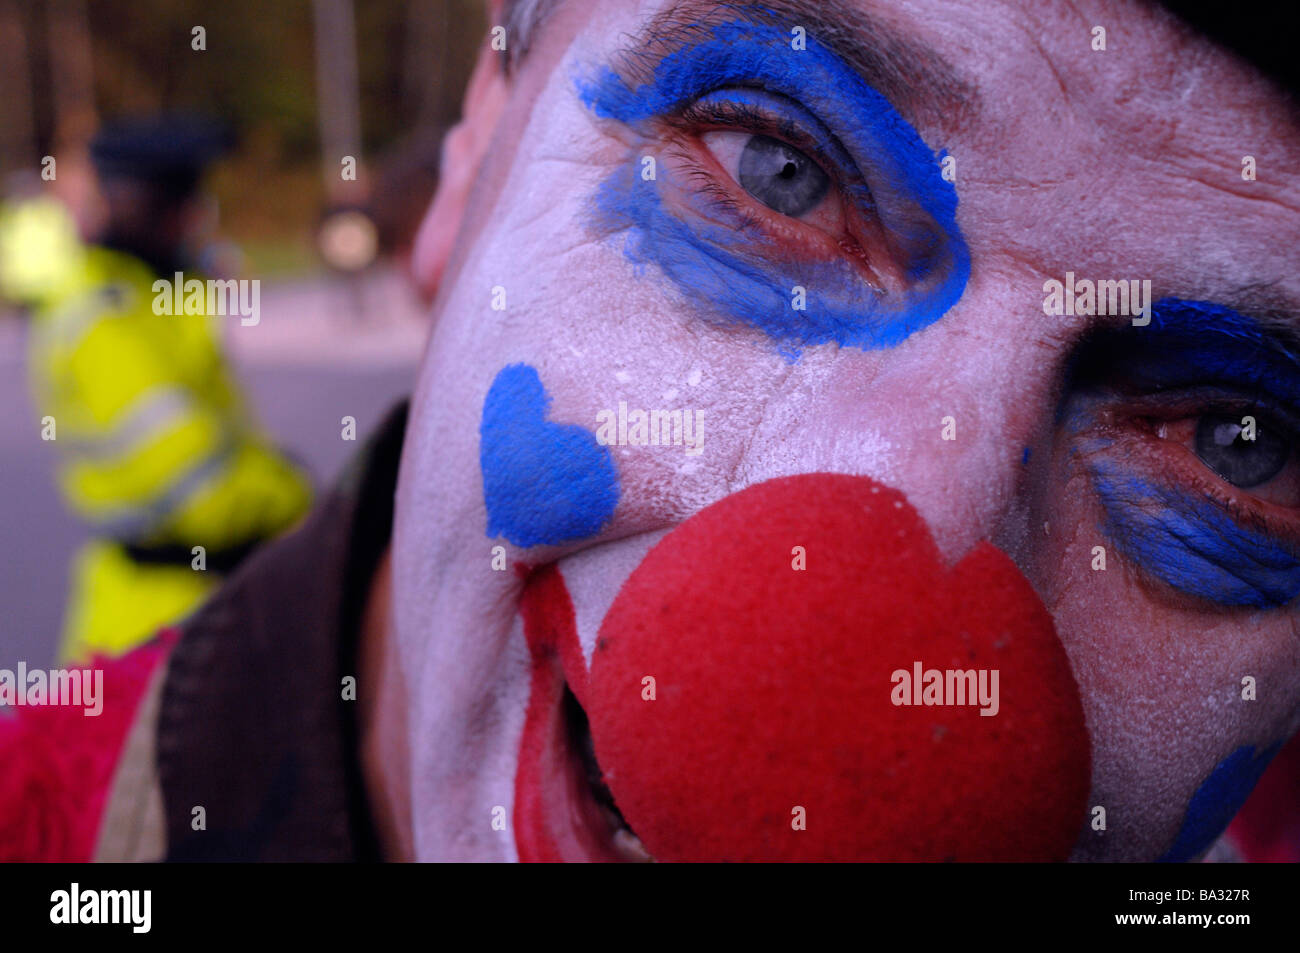 Close up of a clown's face Banque D'Images